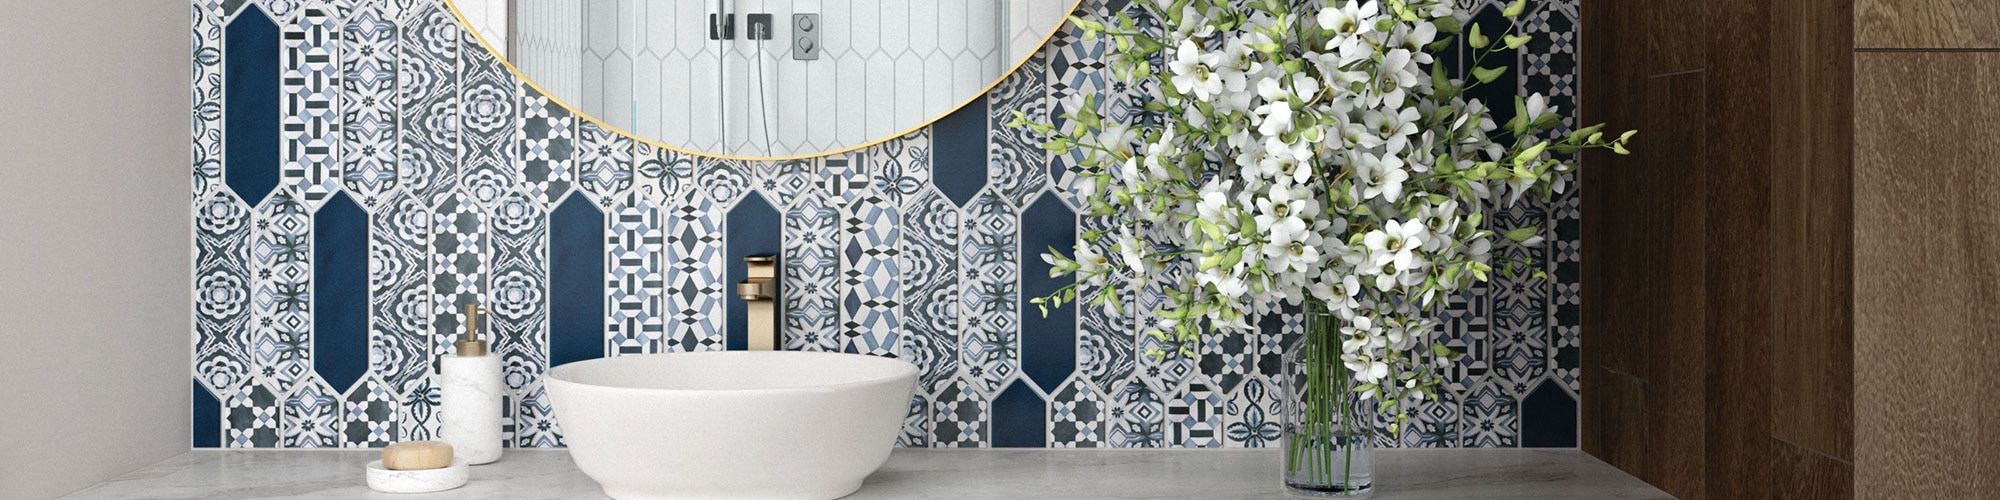 Bathroom vanity with gray marble look countertop of porcelain slab, blue & white encaustic picket tile backsplash, vessel sink, and round mirror.